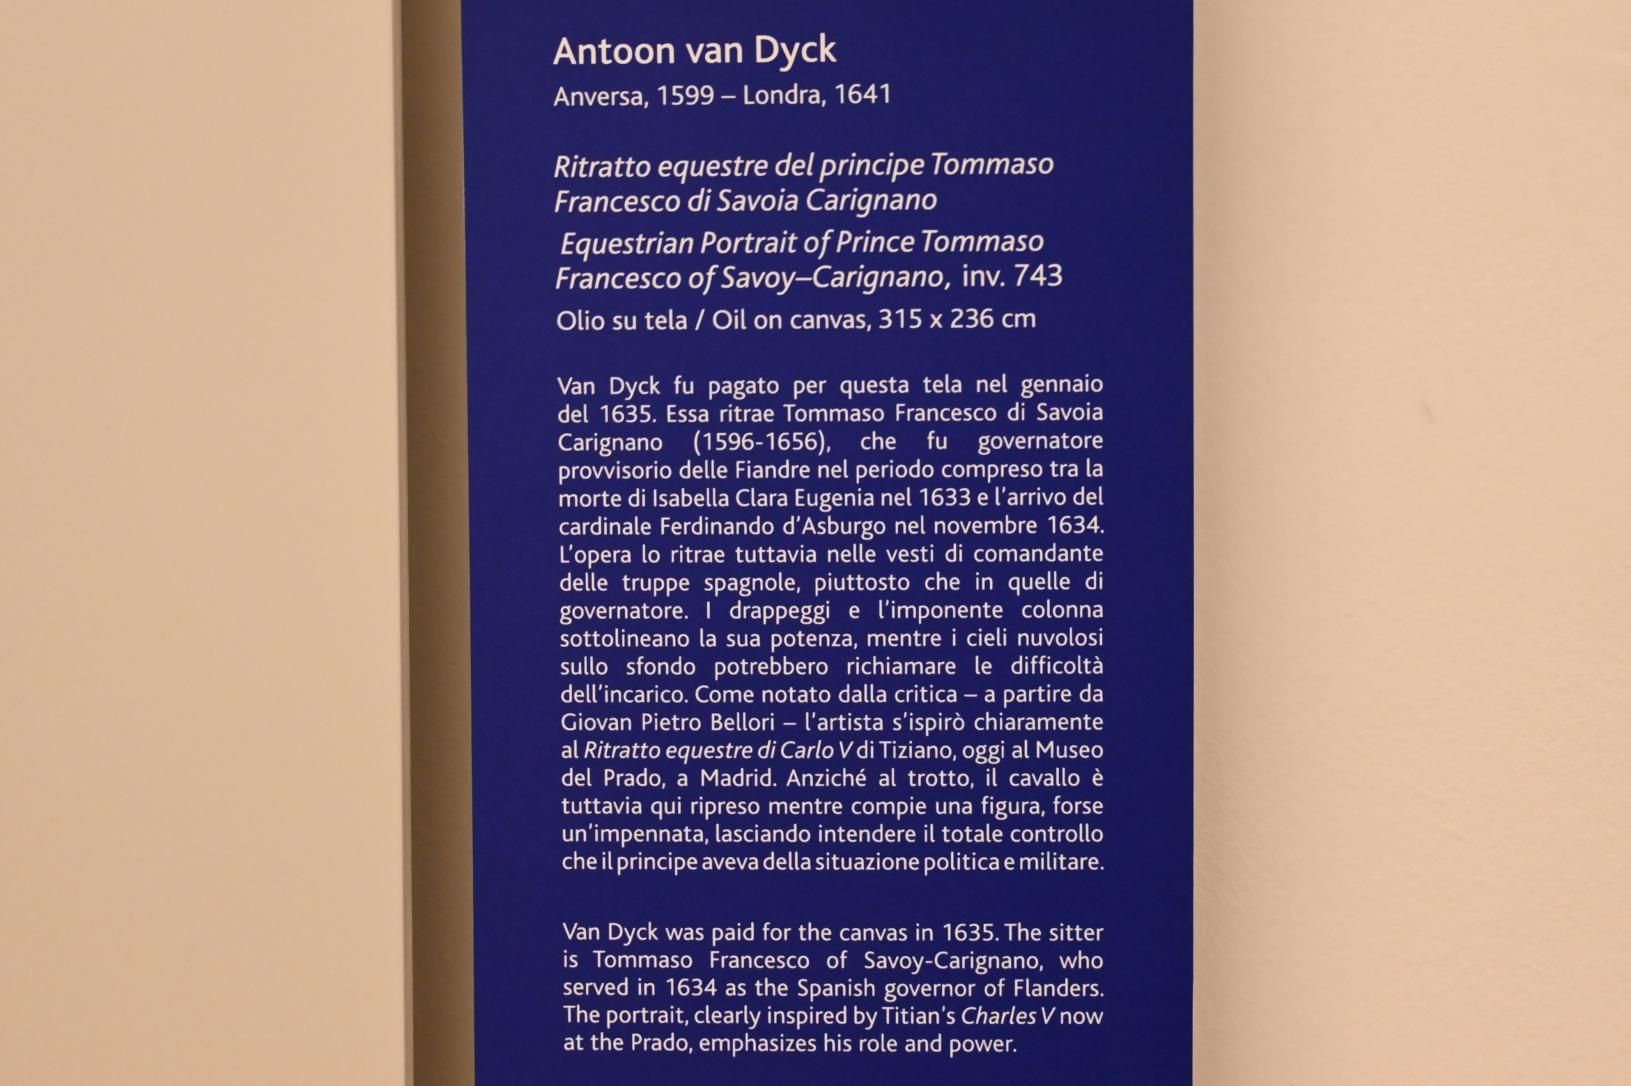 Anthonis (Anton) van Dyck (1614–1641), Porträt Thomas Franz von Savoyen, Turin, Galleria Sabauda, Saal 29, 1635, Bild 2/2